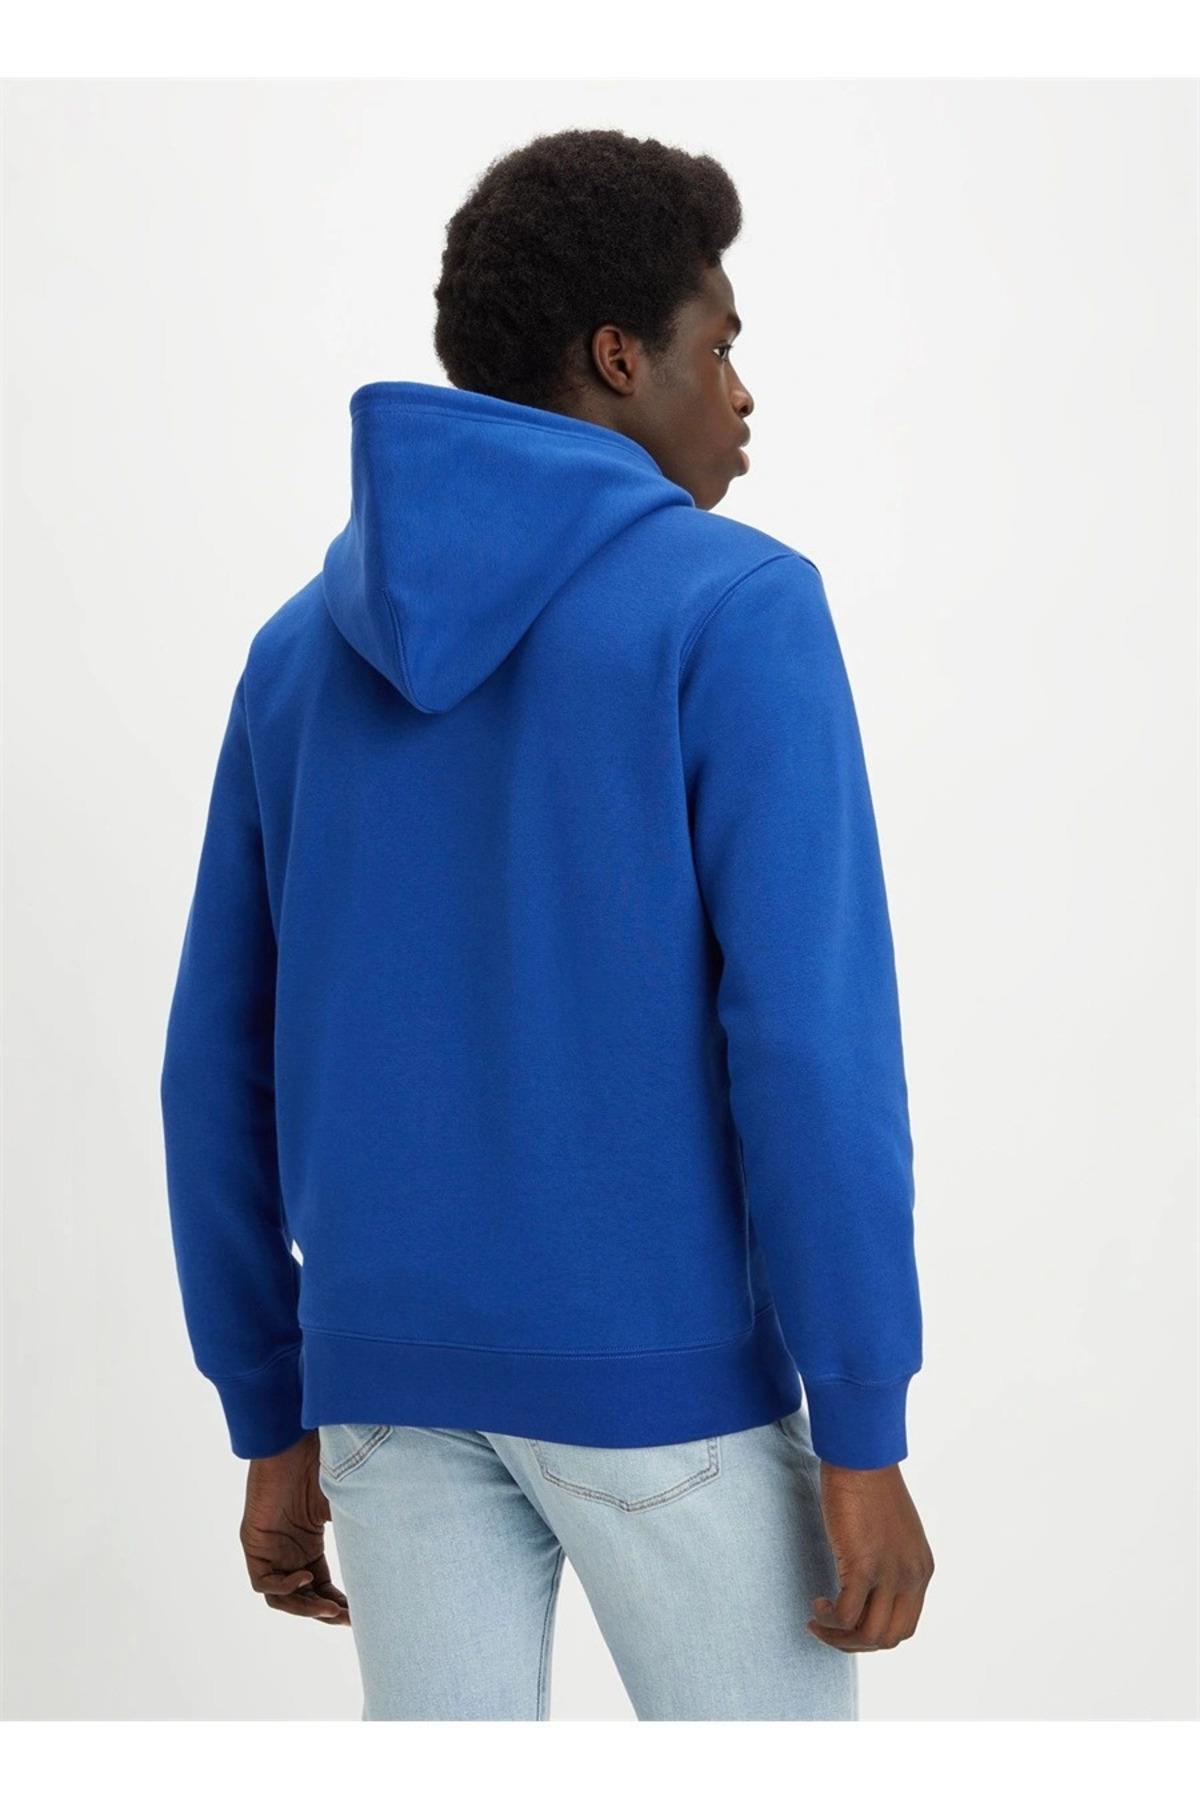 Levi's Erkek Fermuarlı Hoodie Mavi Sweatshirt Hırka - A4915-0007